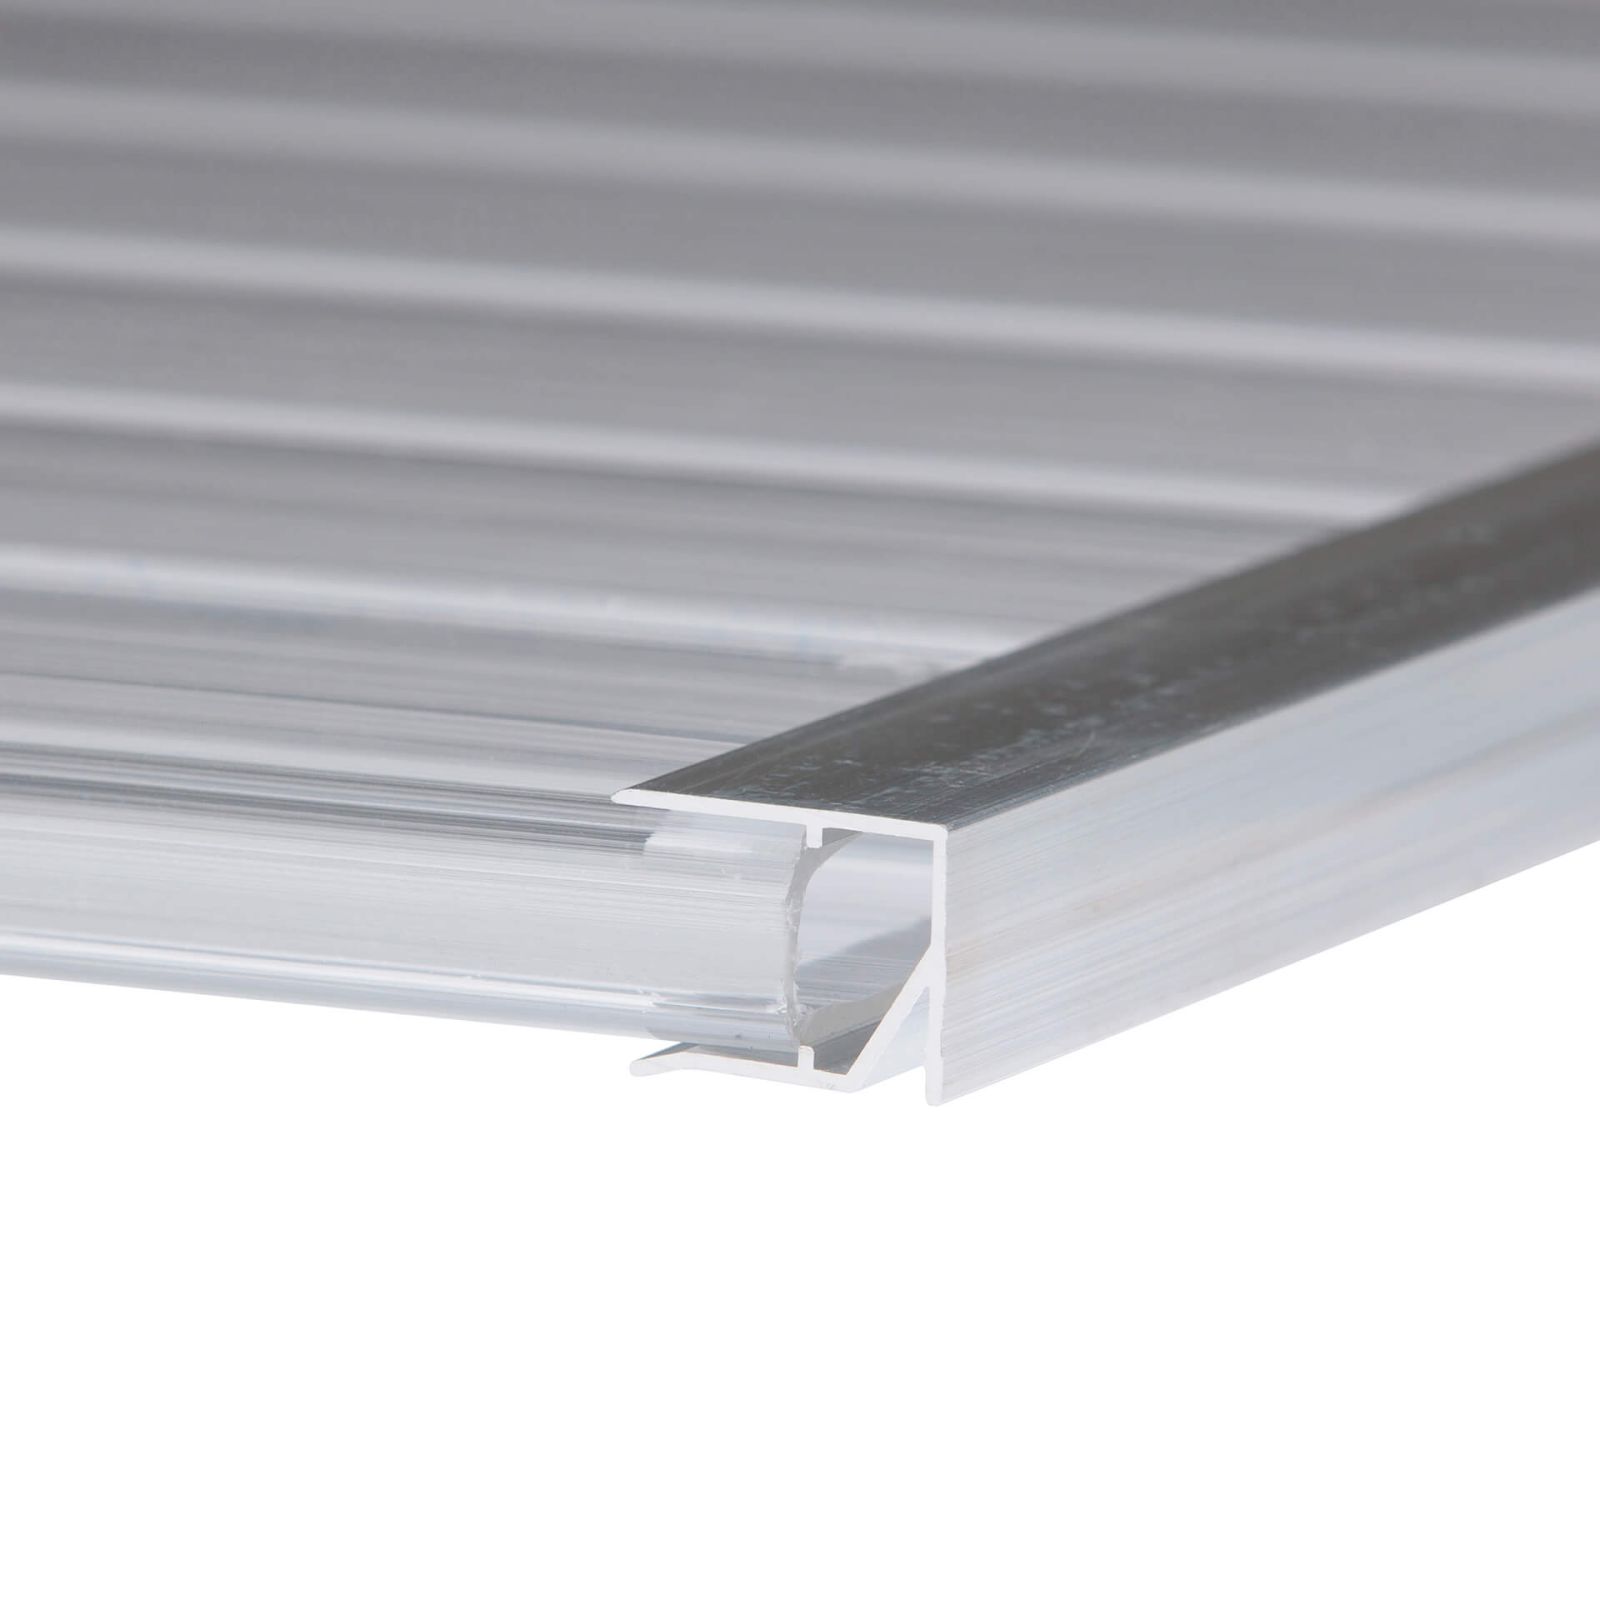 Abschlussprofil oberseite | 10 mm | Aluminium | Breite 1050 mm | Blank #2